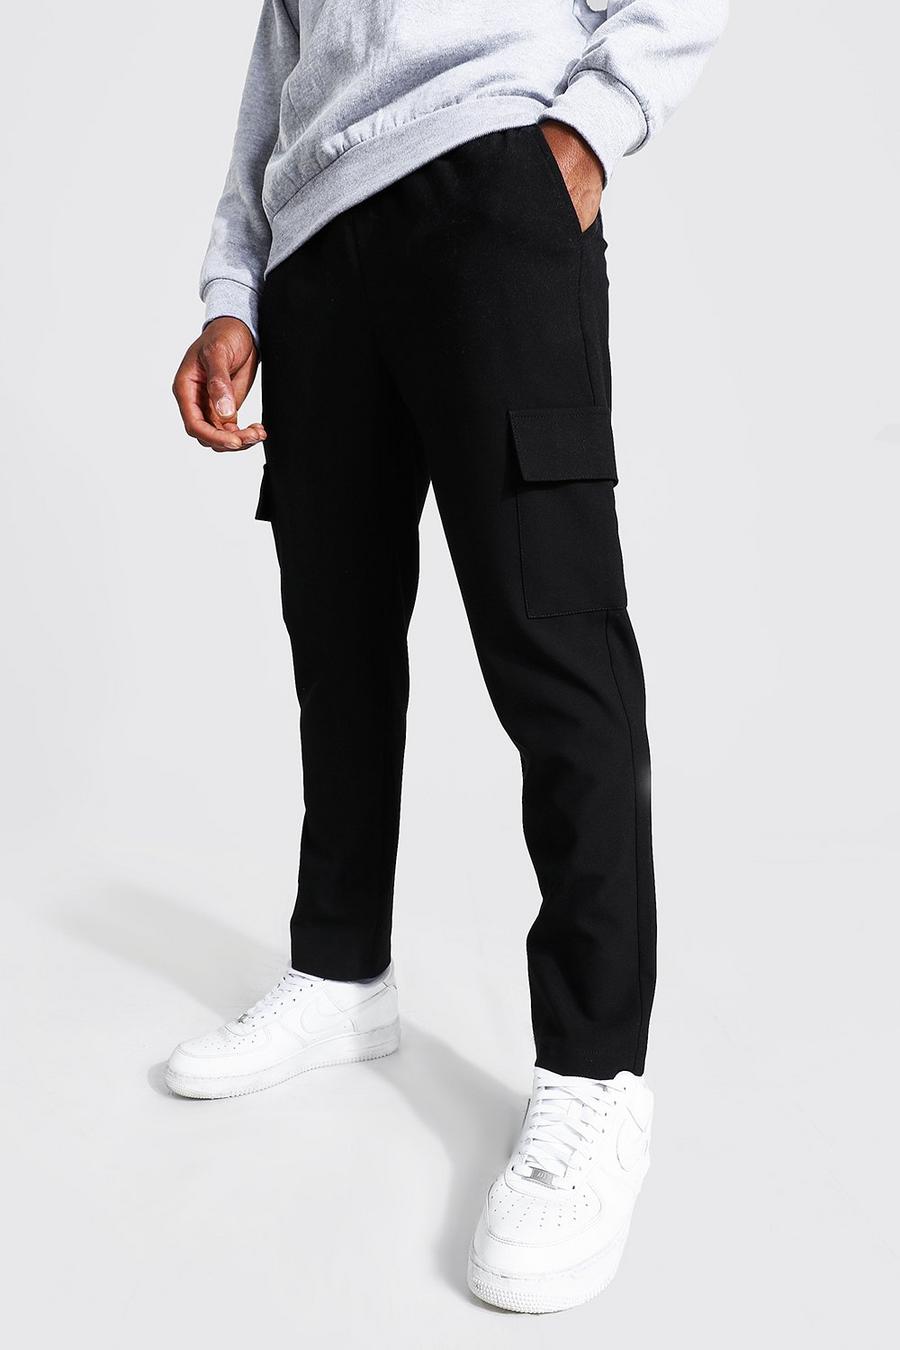 Pantalon de jogging habillé court skinny chic uni, Noir black